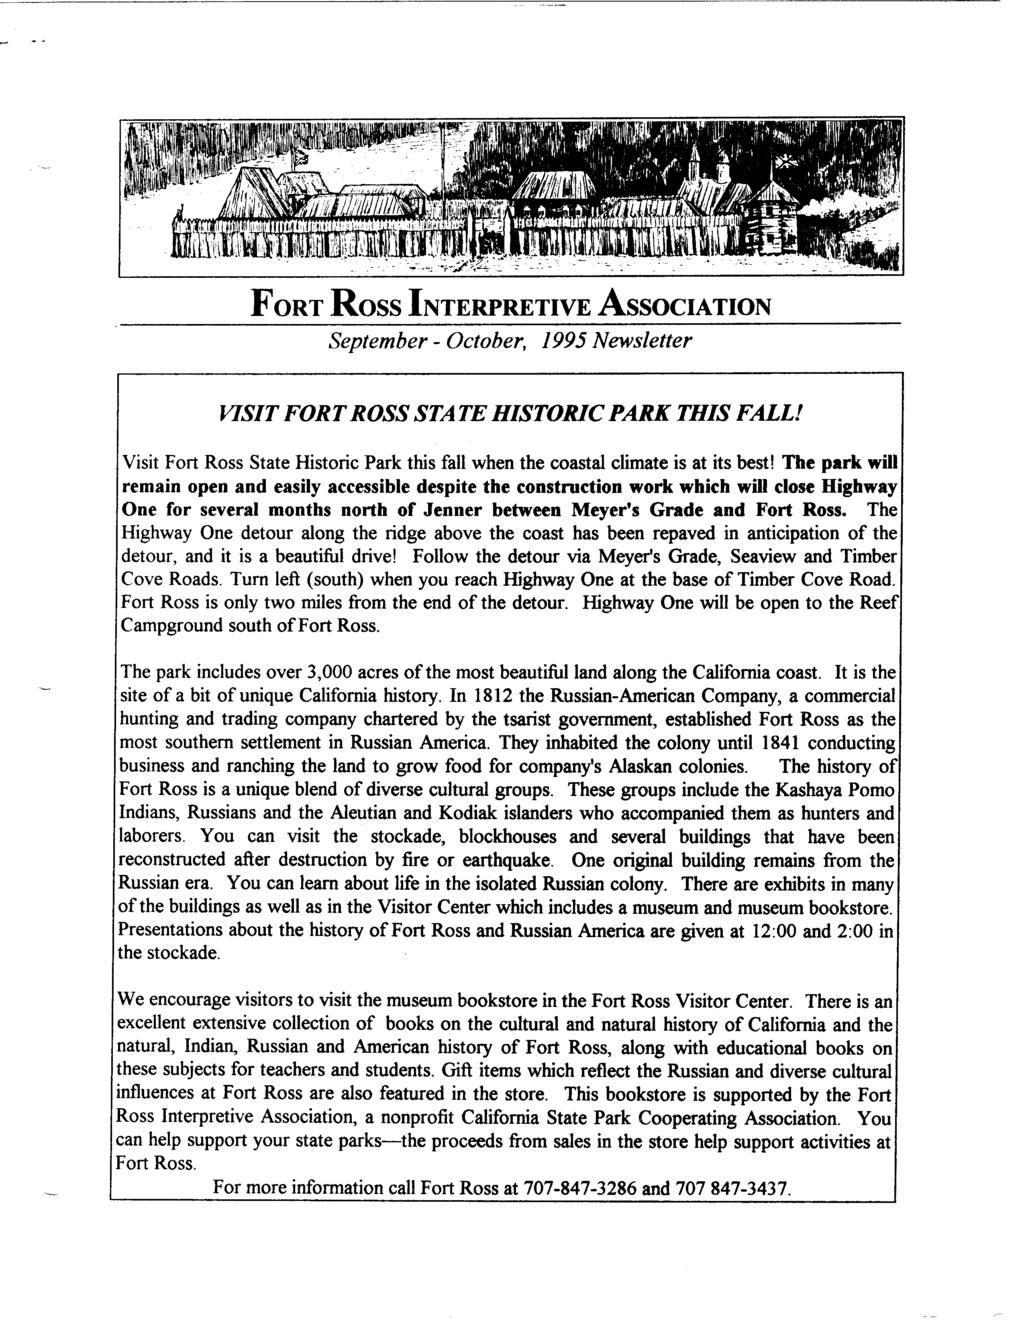 FORT Ross INTERPRETIVE ASSOCIATION September - October, 1995 Newsletter VISIT FOR T ROSS STA TE HISTORIC PARK THIS FALL!